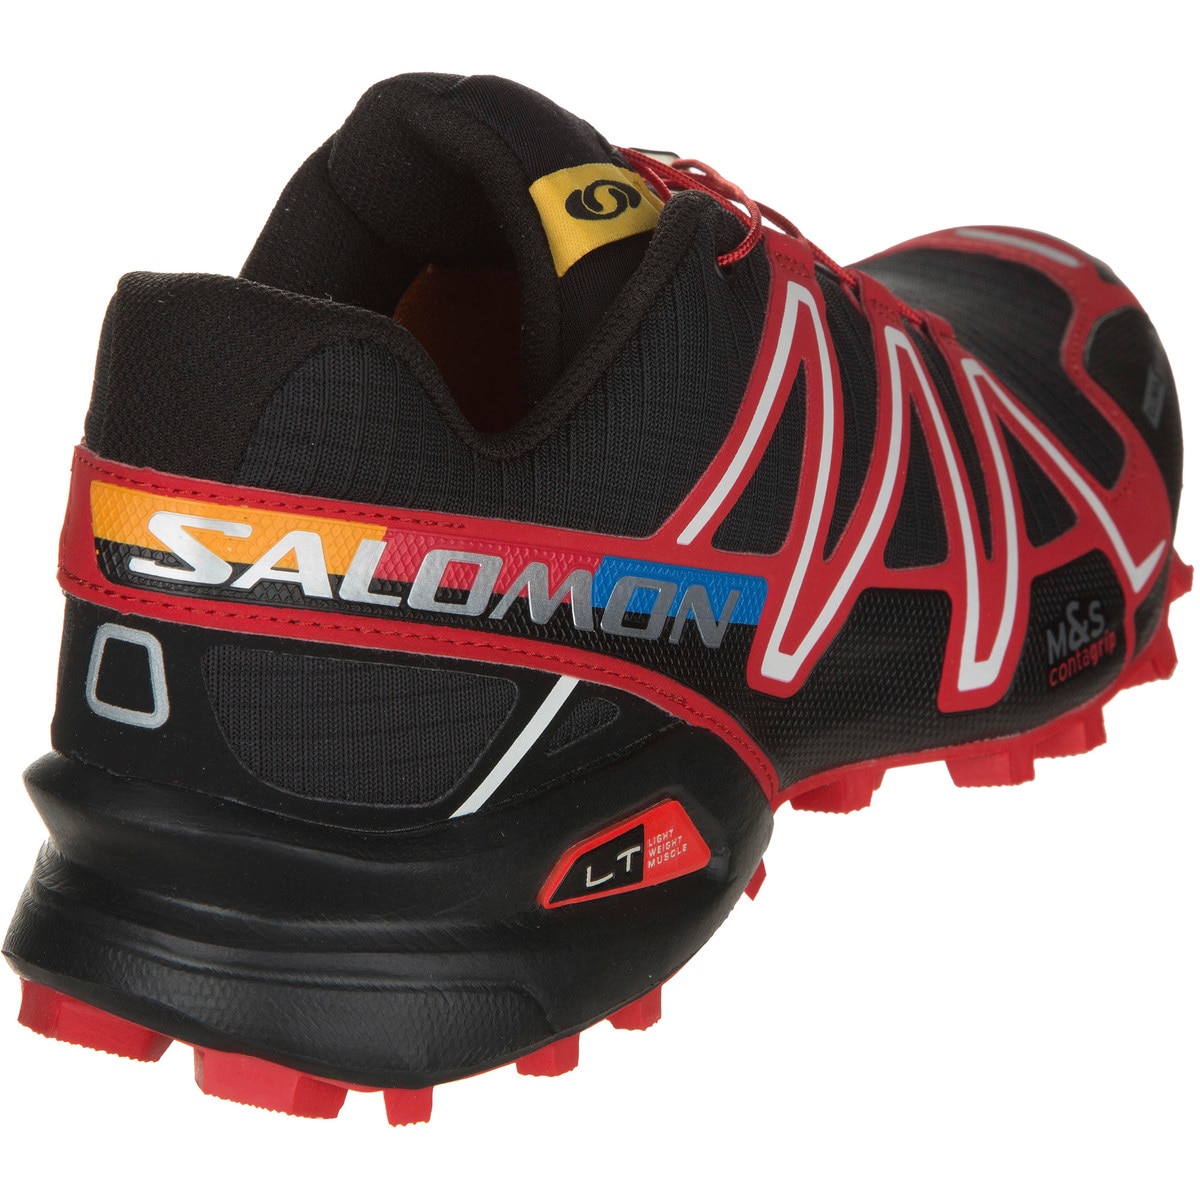 Overtræder Forespørgsel matematiker Salomon Spikecross 3 CS Trail Running Shoe - Men's - Footwear